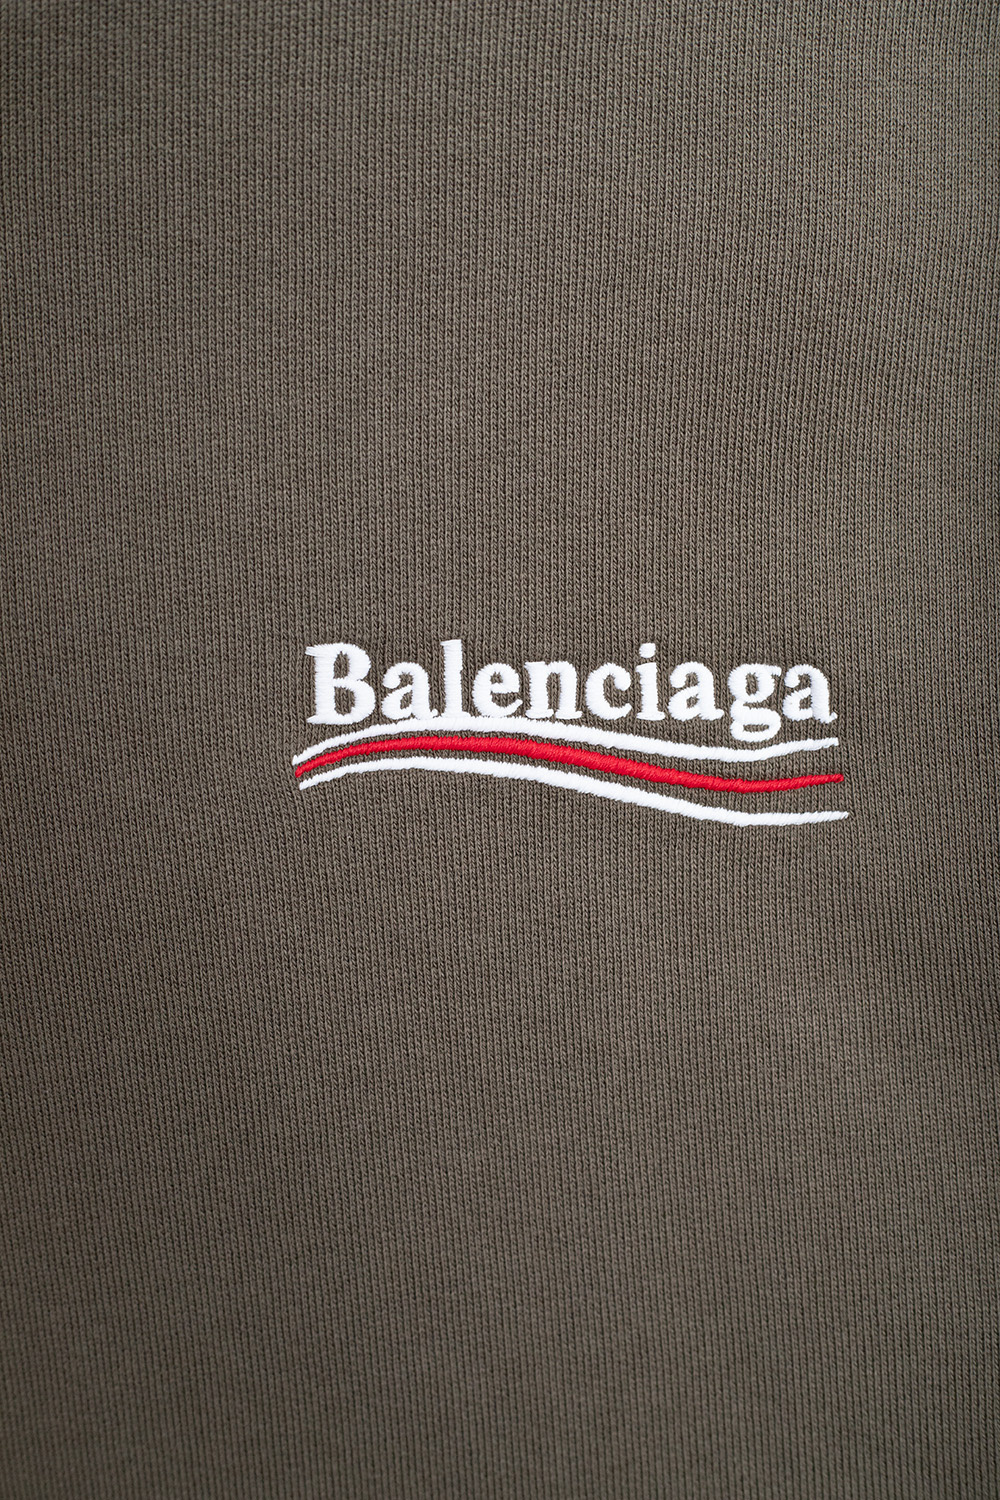 Balenciaga Kids  Balenciaga Boys  Girls Shoes  Clothes  Flannels